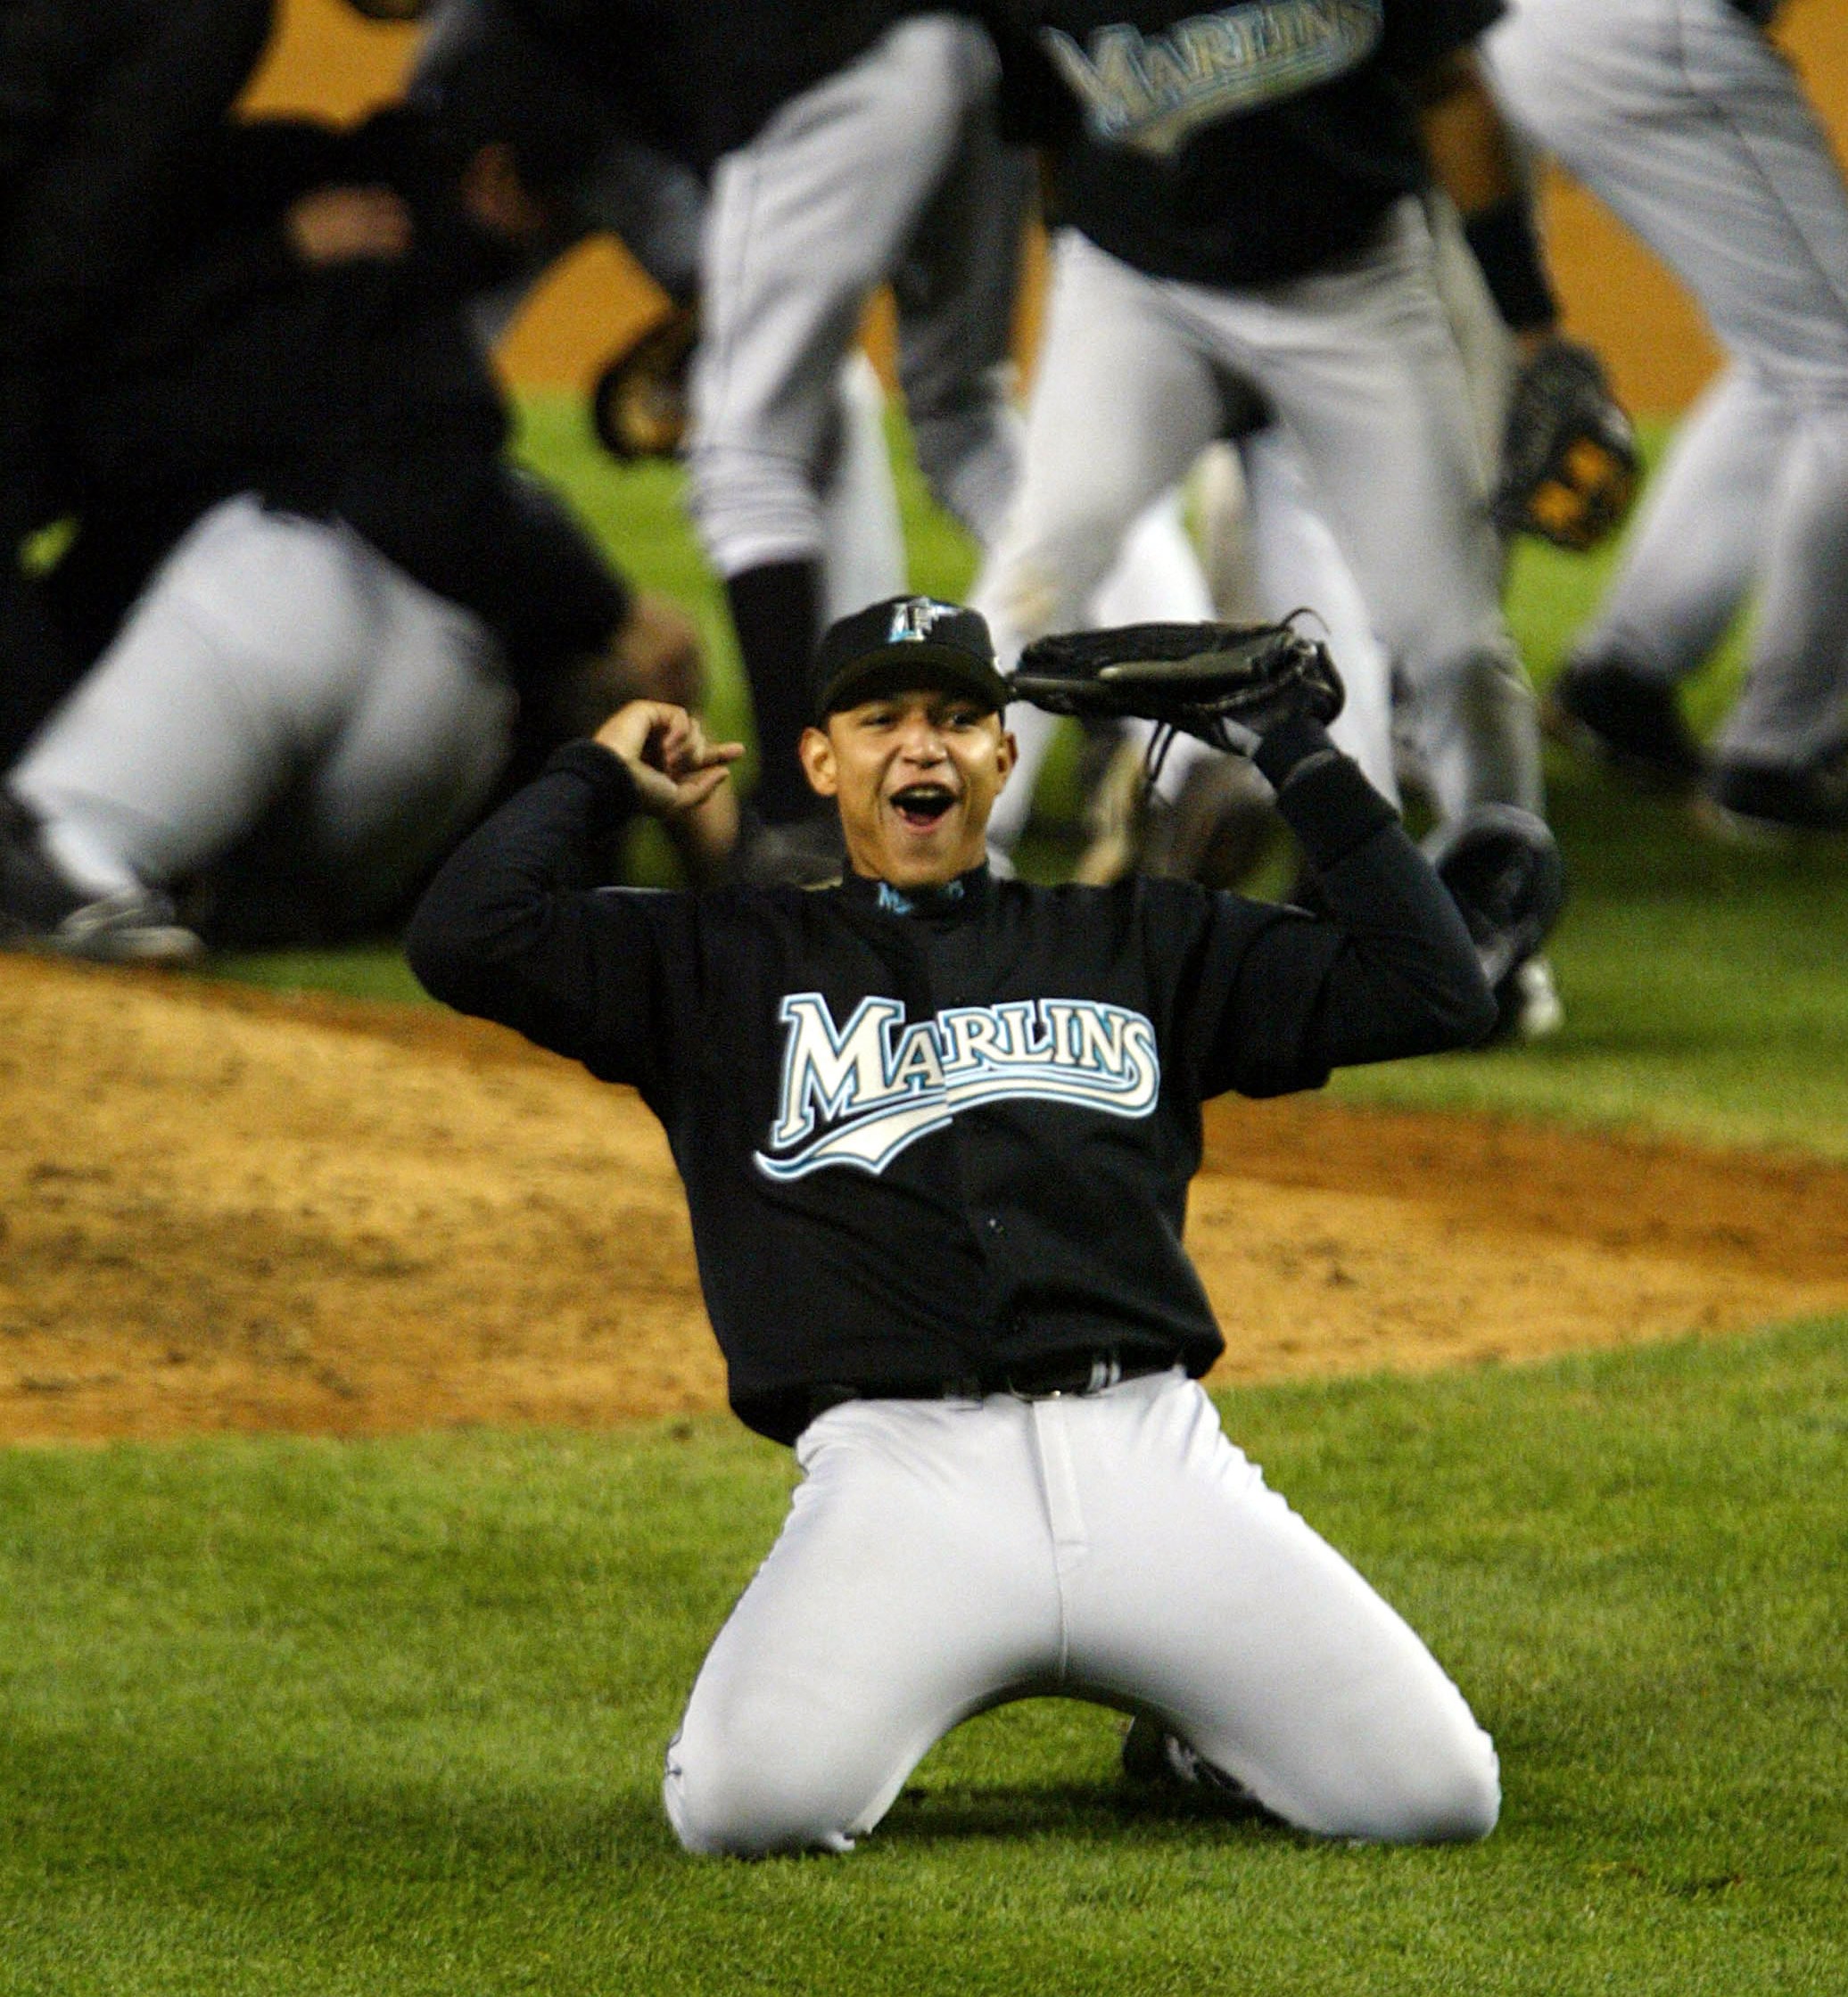 Un joven Miguel (20) celebra el último out de la SM de 2003 ante los Yankees